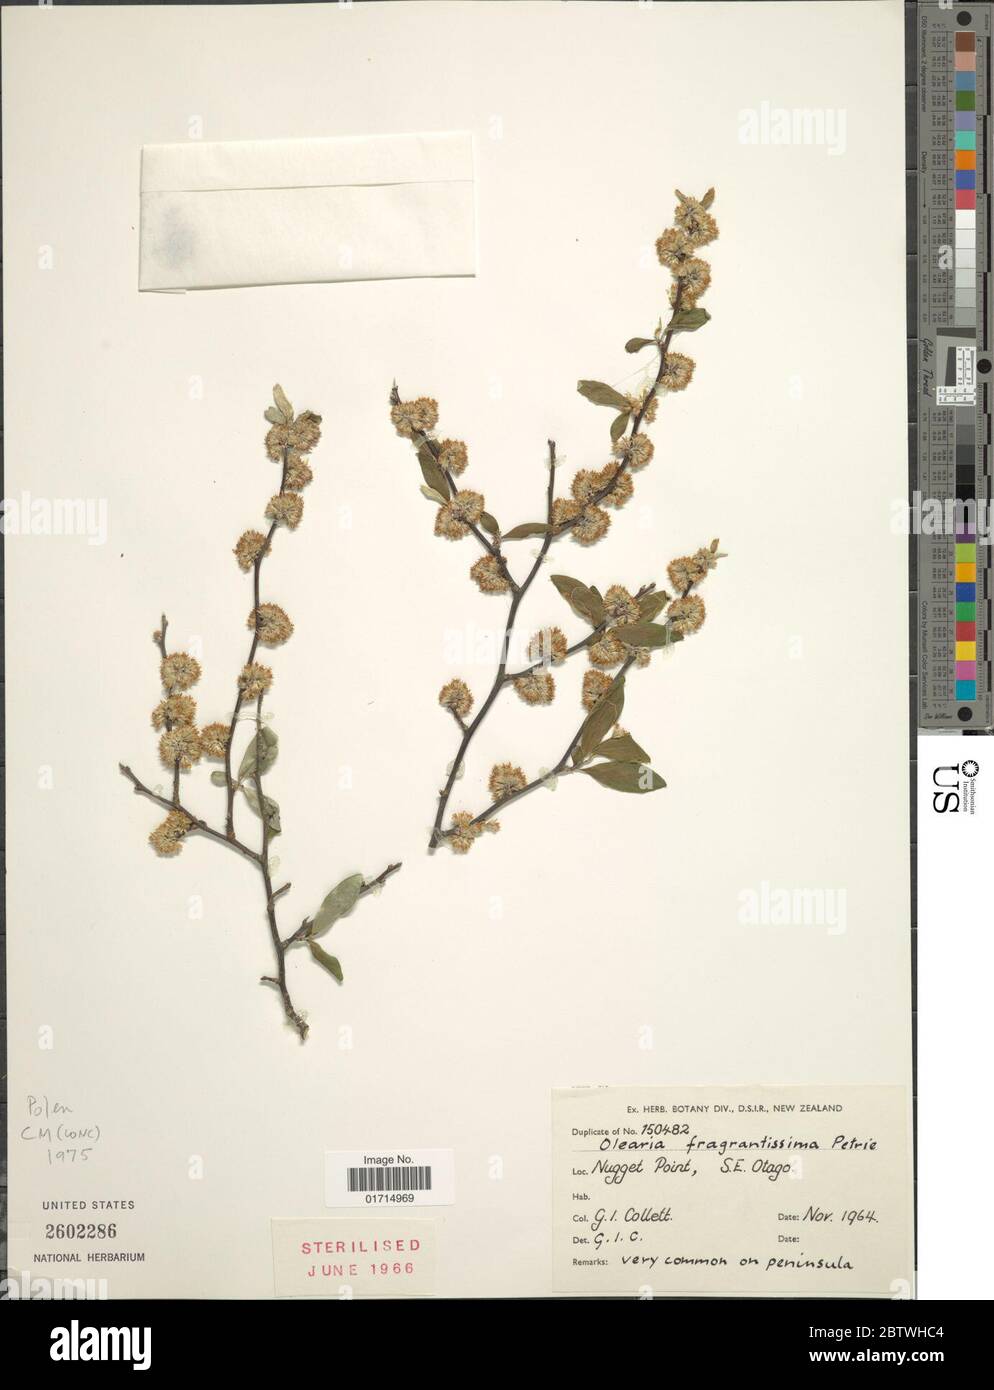 Olearia fragrantissima Petrie. Stock Photo